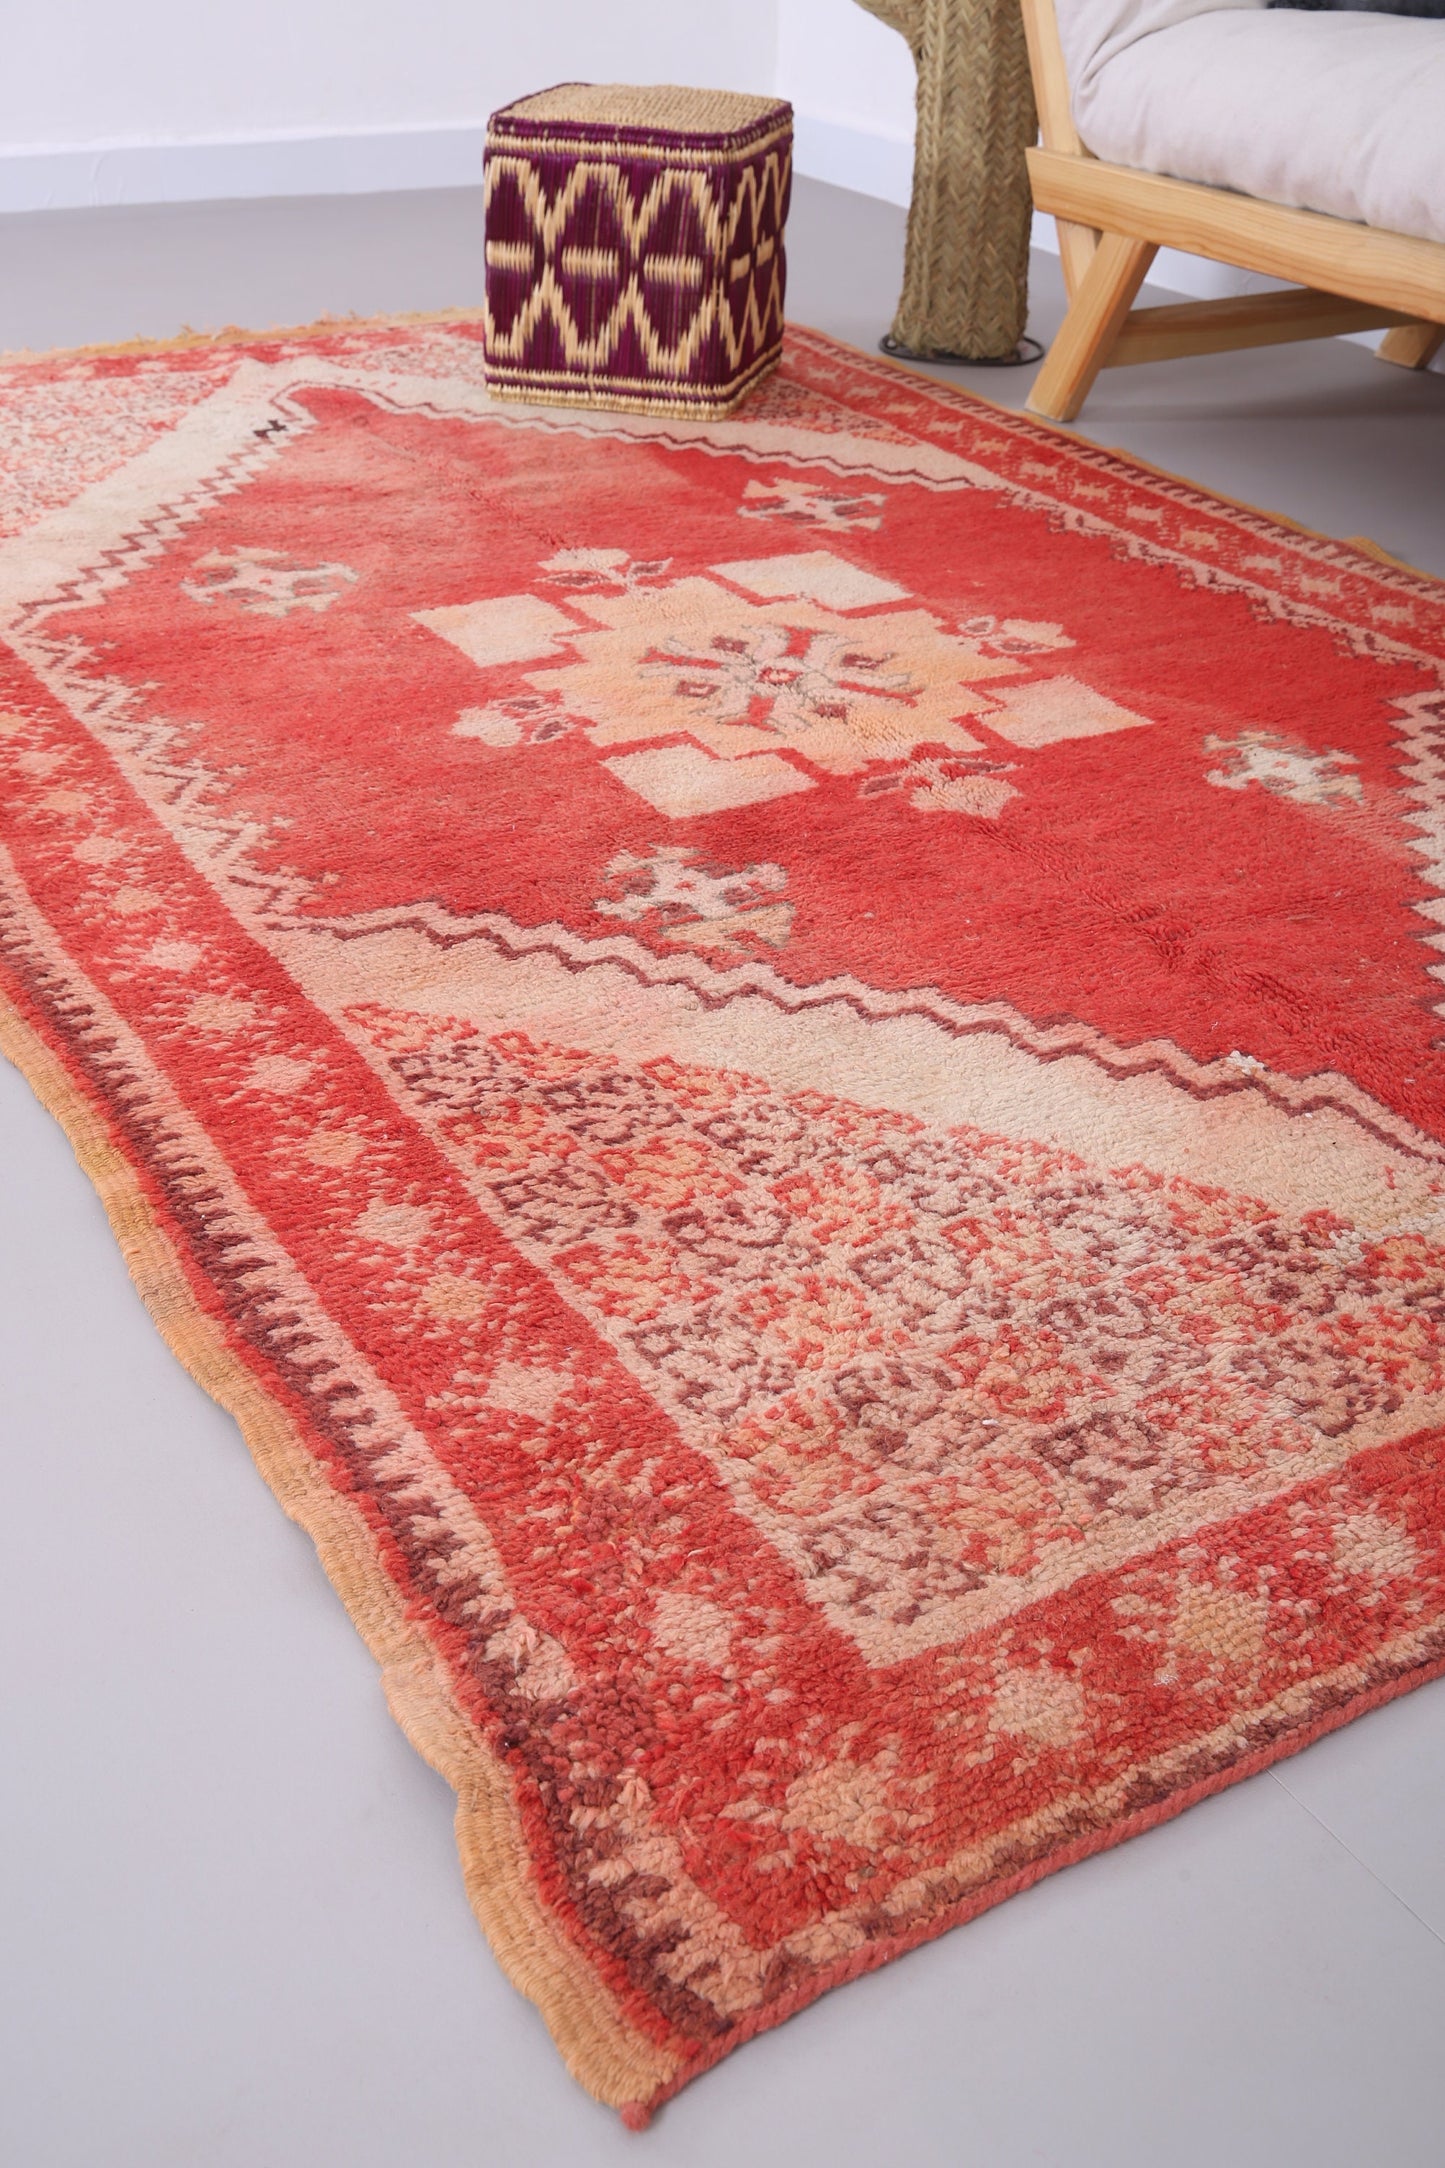 Roter marokkanischer Vintage-Teppich 5,2 FT x 9 FT - roter marokkanischer Teppich - Vintage-Tribal-Teppich - handgemachter Berberteppich - einzigartiger Vintage-Teppich - Boho-Teppich